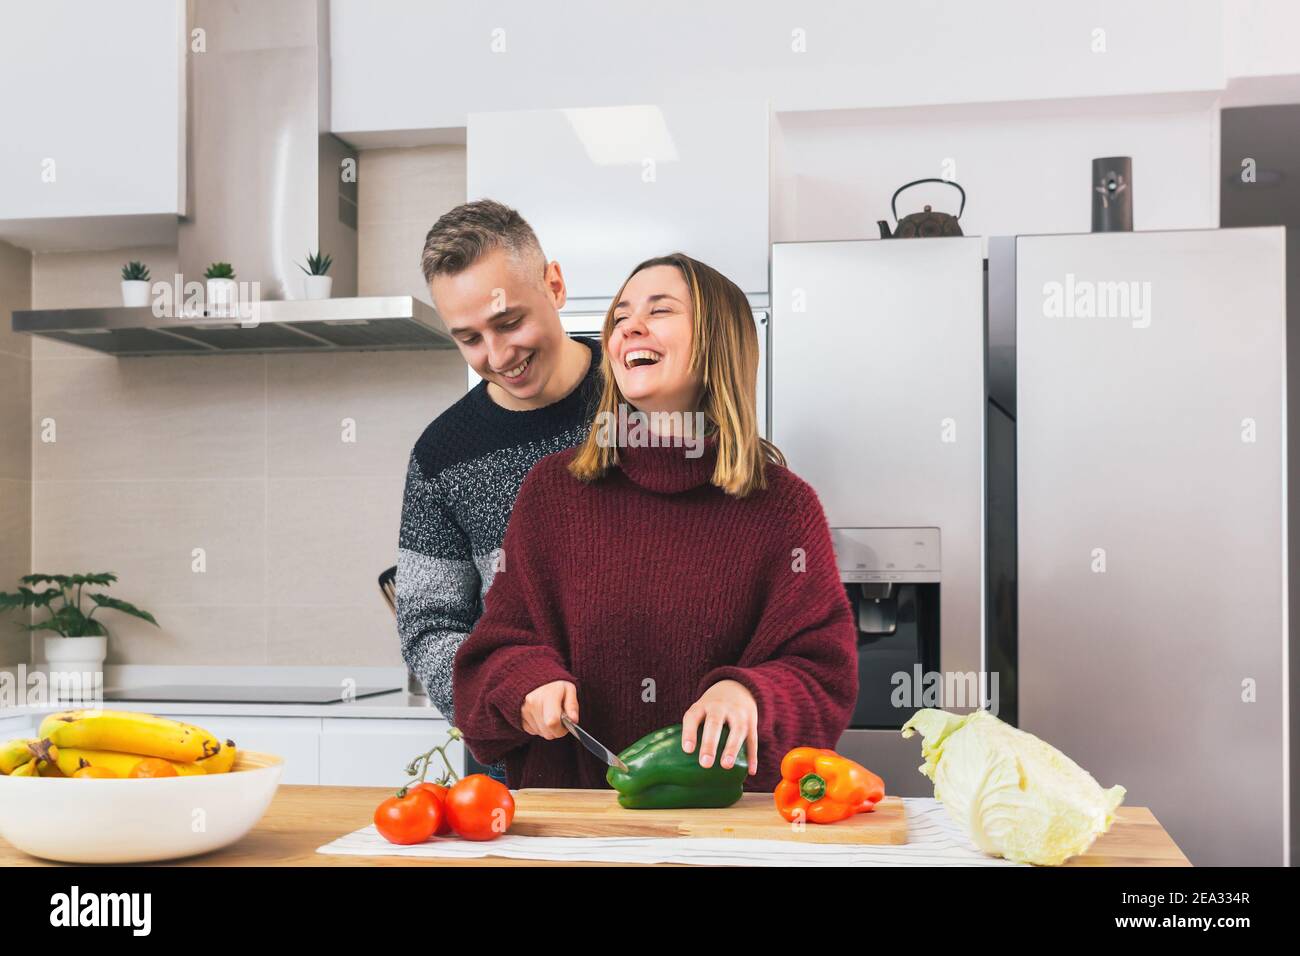 Stock Foto von einem jungen Paar lachen und kochen gesunde Lebensmittel zusammen in der Küche zu Hause. Gemüse für eine vegane Mahlzeit schneiden Stockfoto